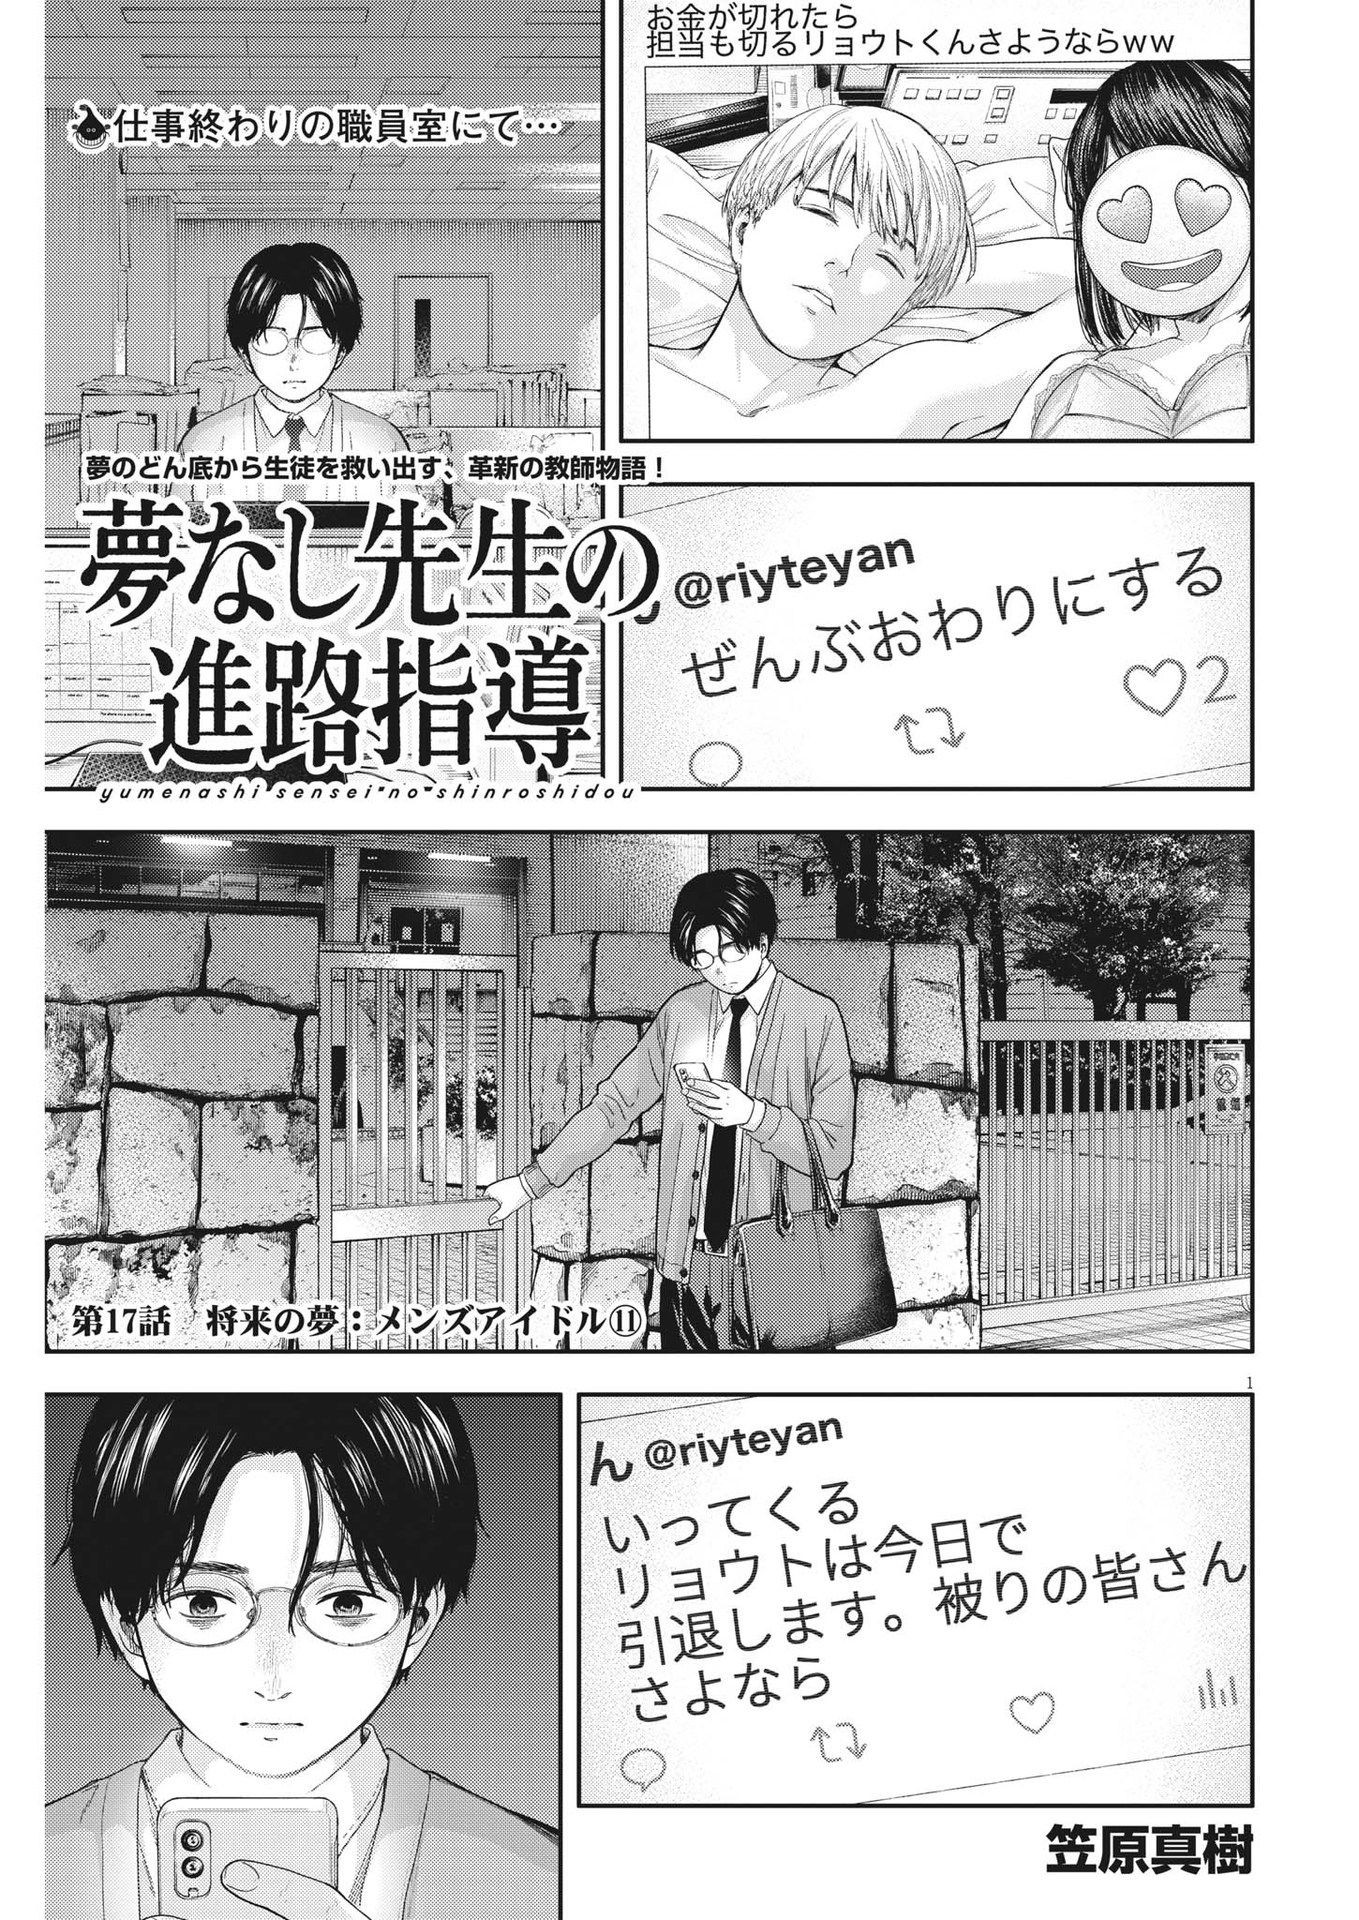 Yumenashi-sensei no Shinroshidou - Chapter 17 - Page 1